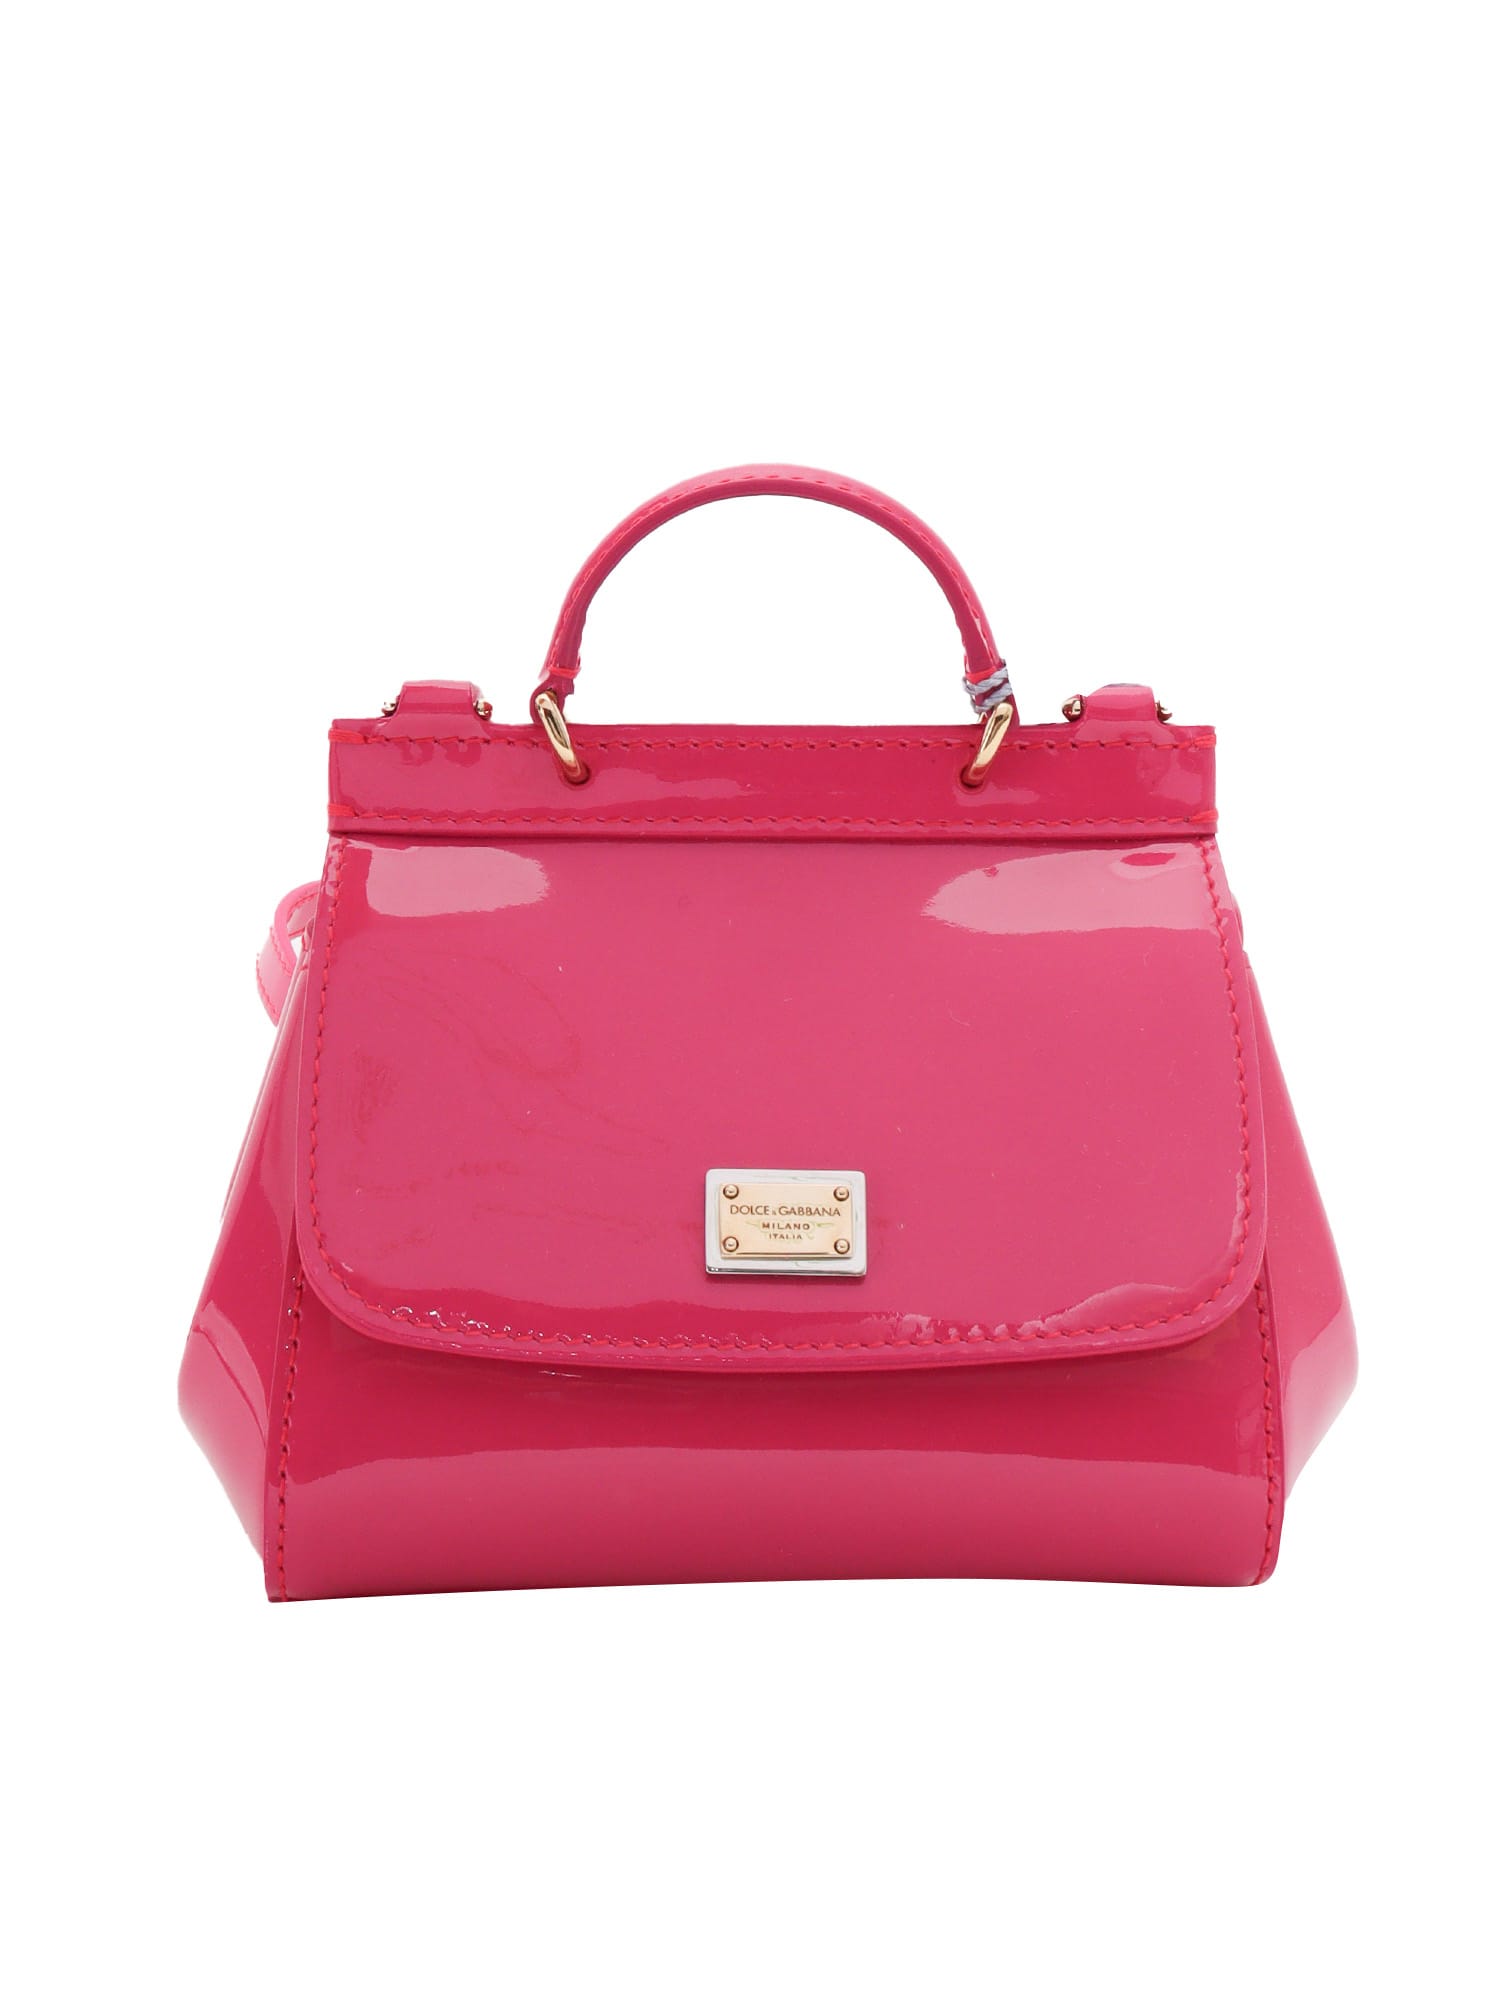 Dolce & Gabbana Patent Leather Shoulder Bag